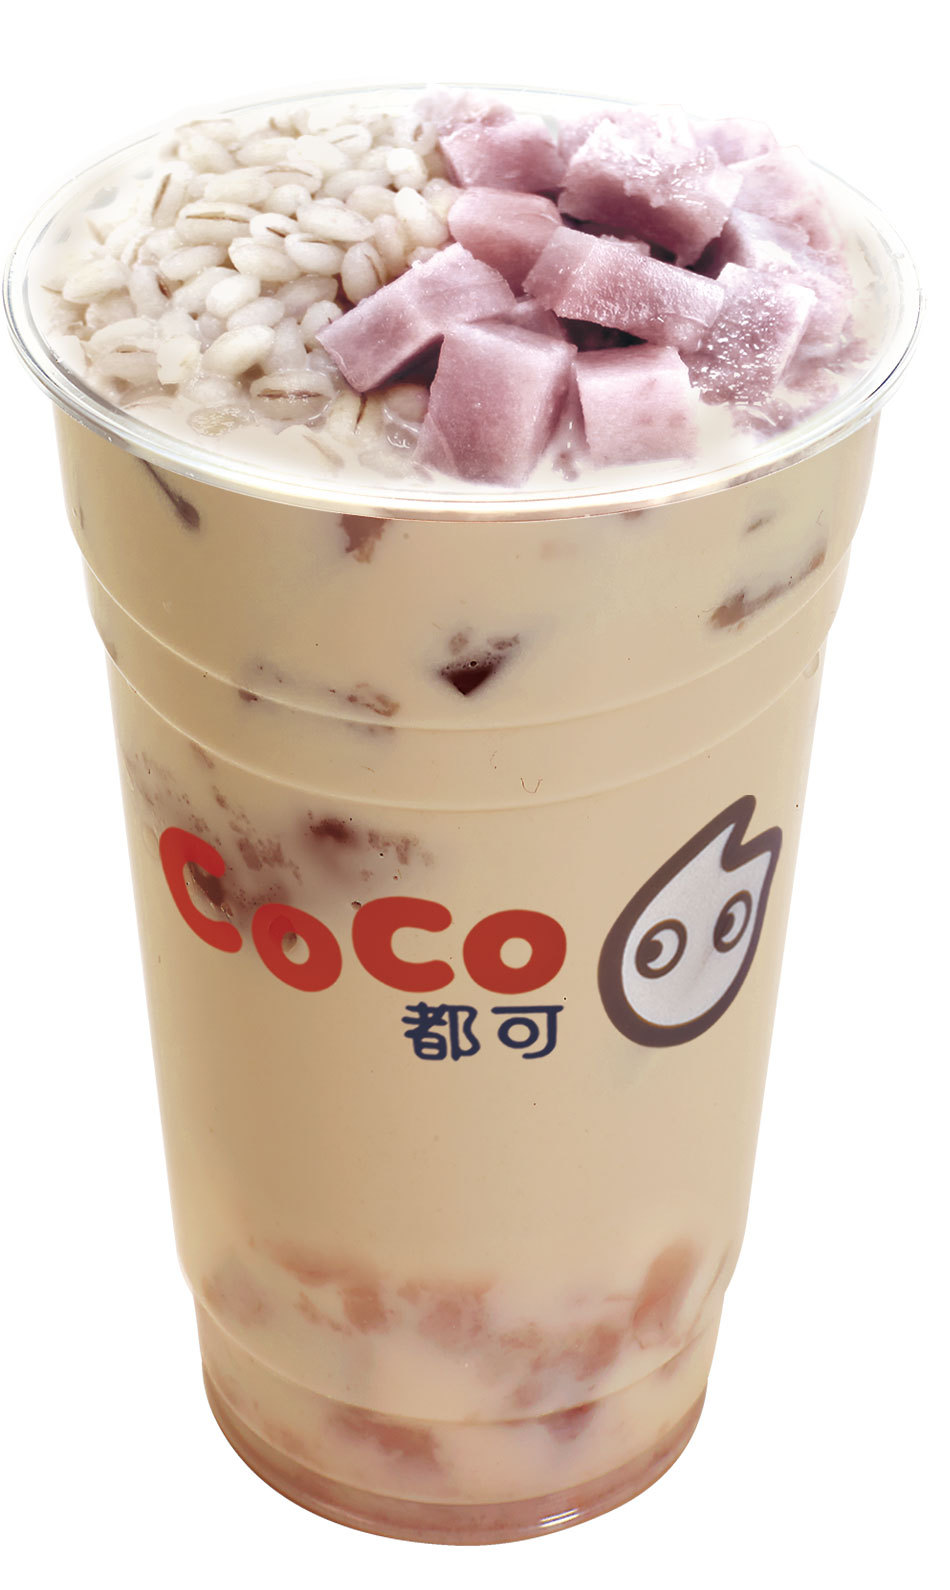 百色coco奶茶公司